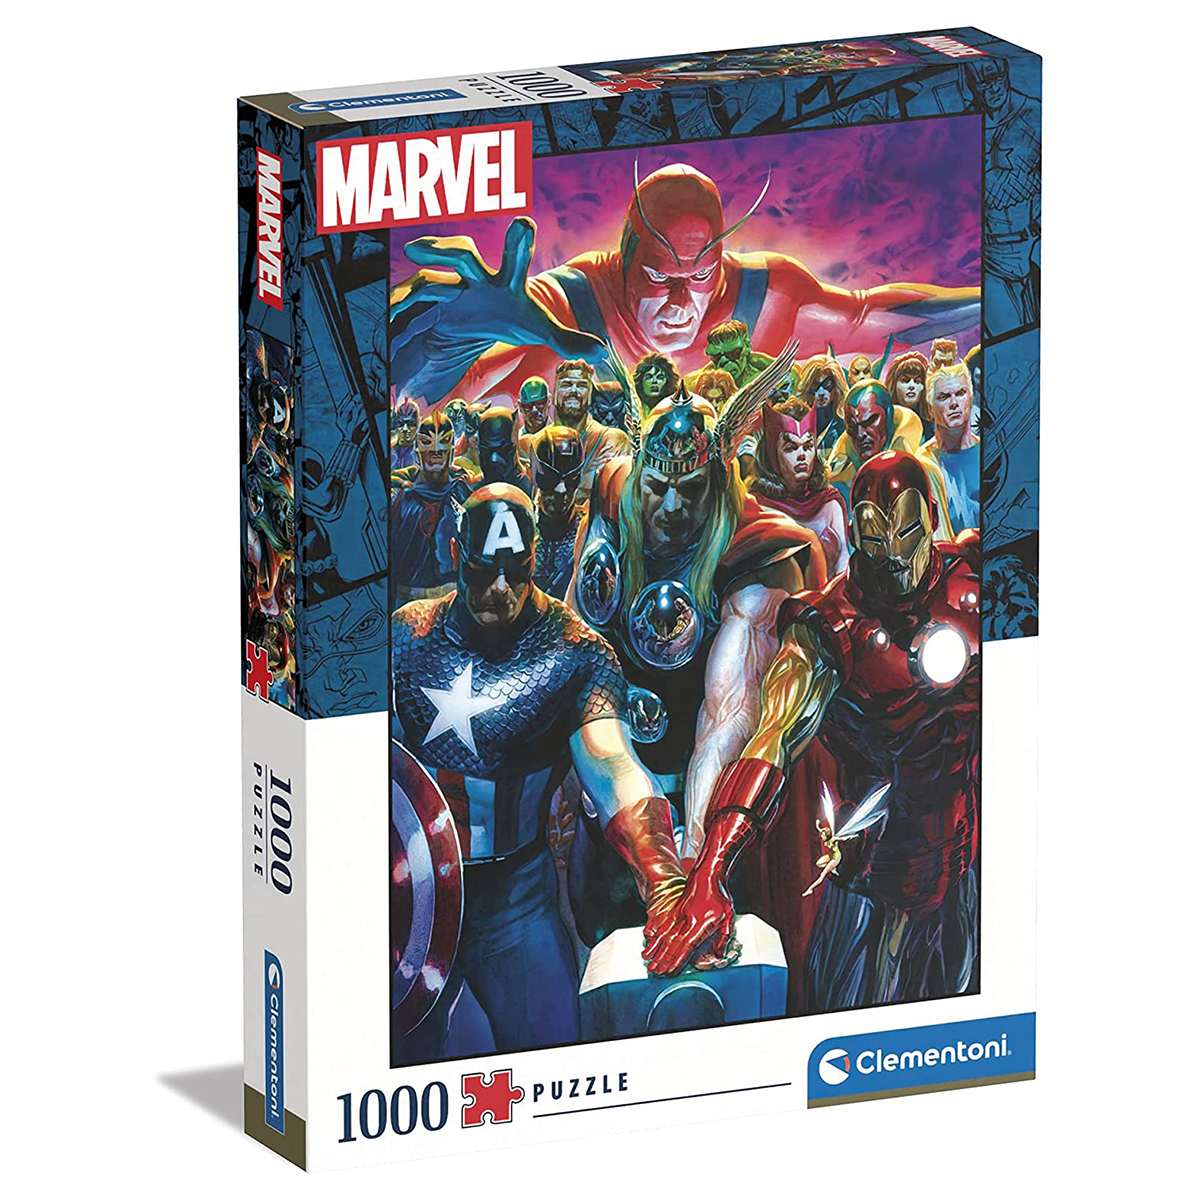 Puzzle Clementoni Marvel The Avengers de 1000 piezas